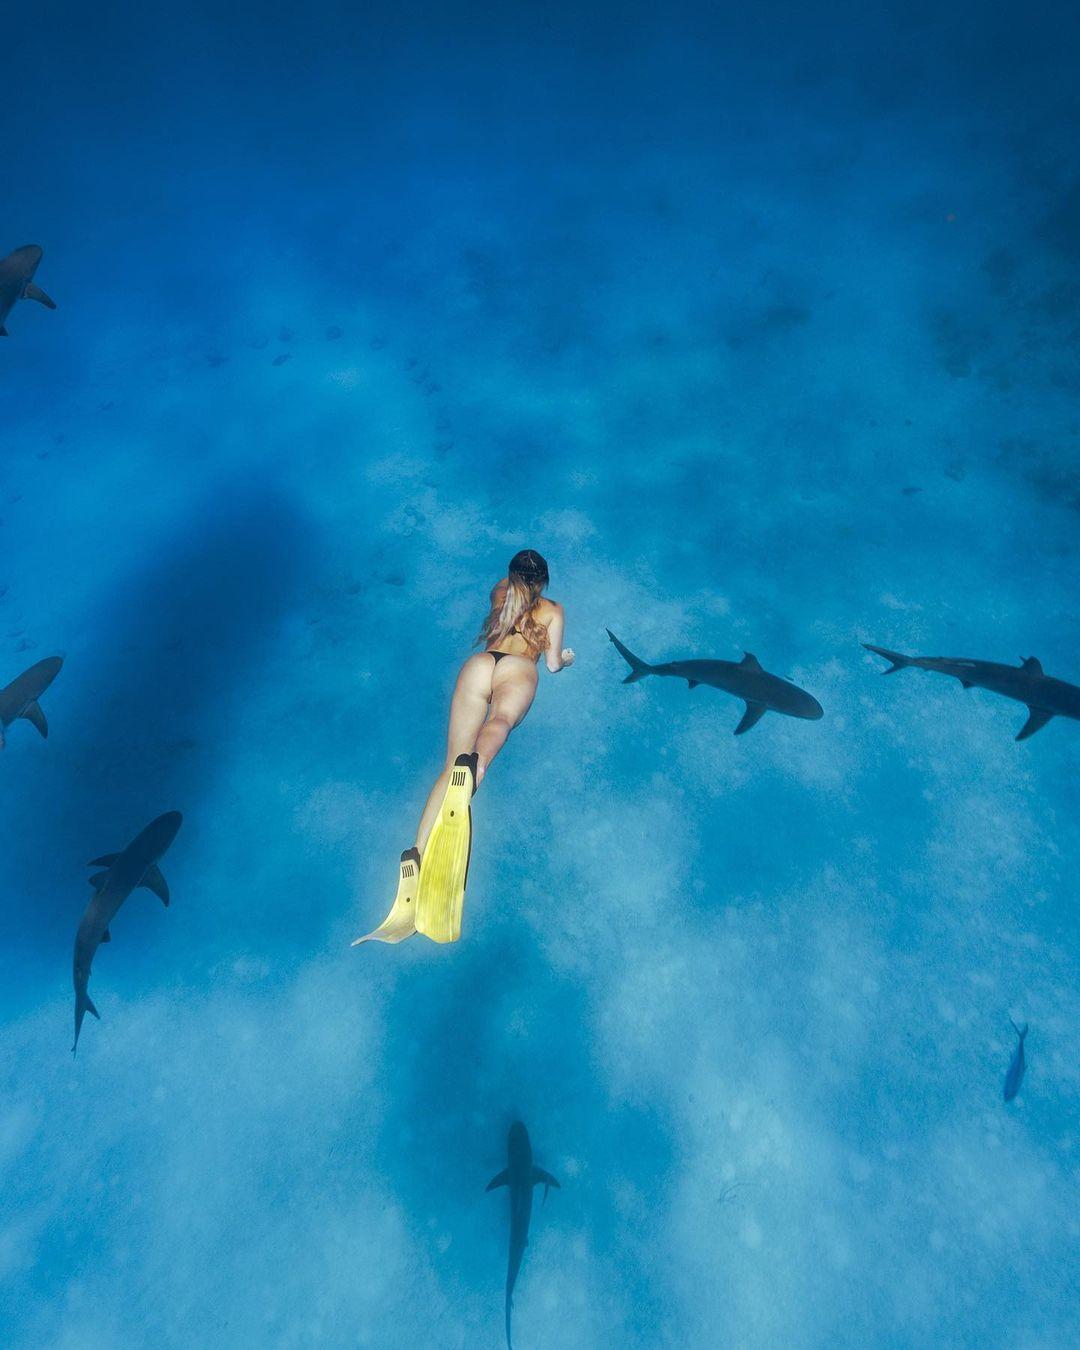 Corinna Kopf swimming with sharks.